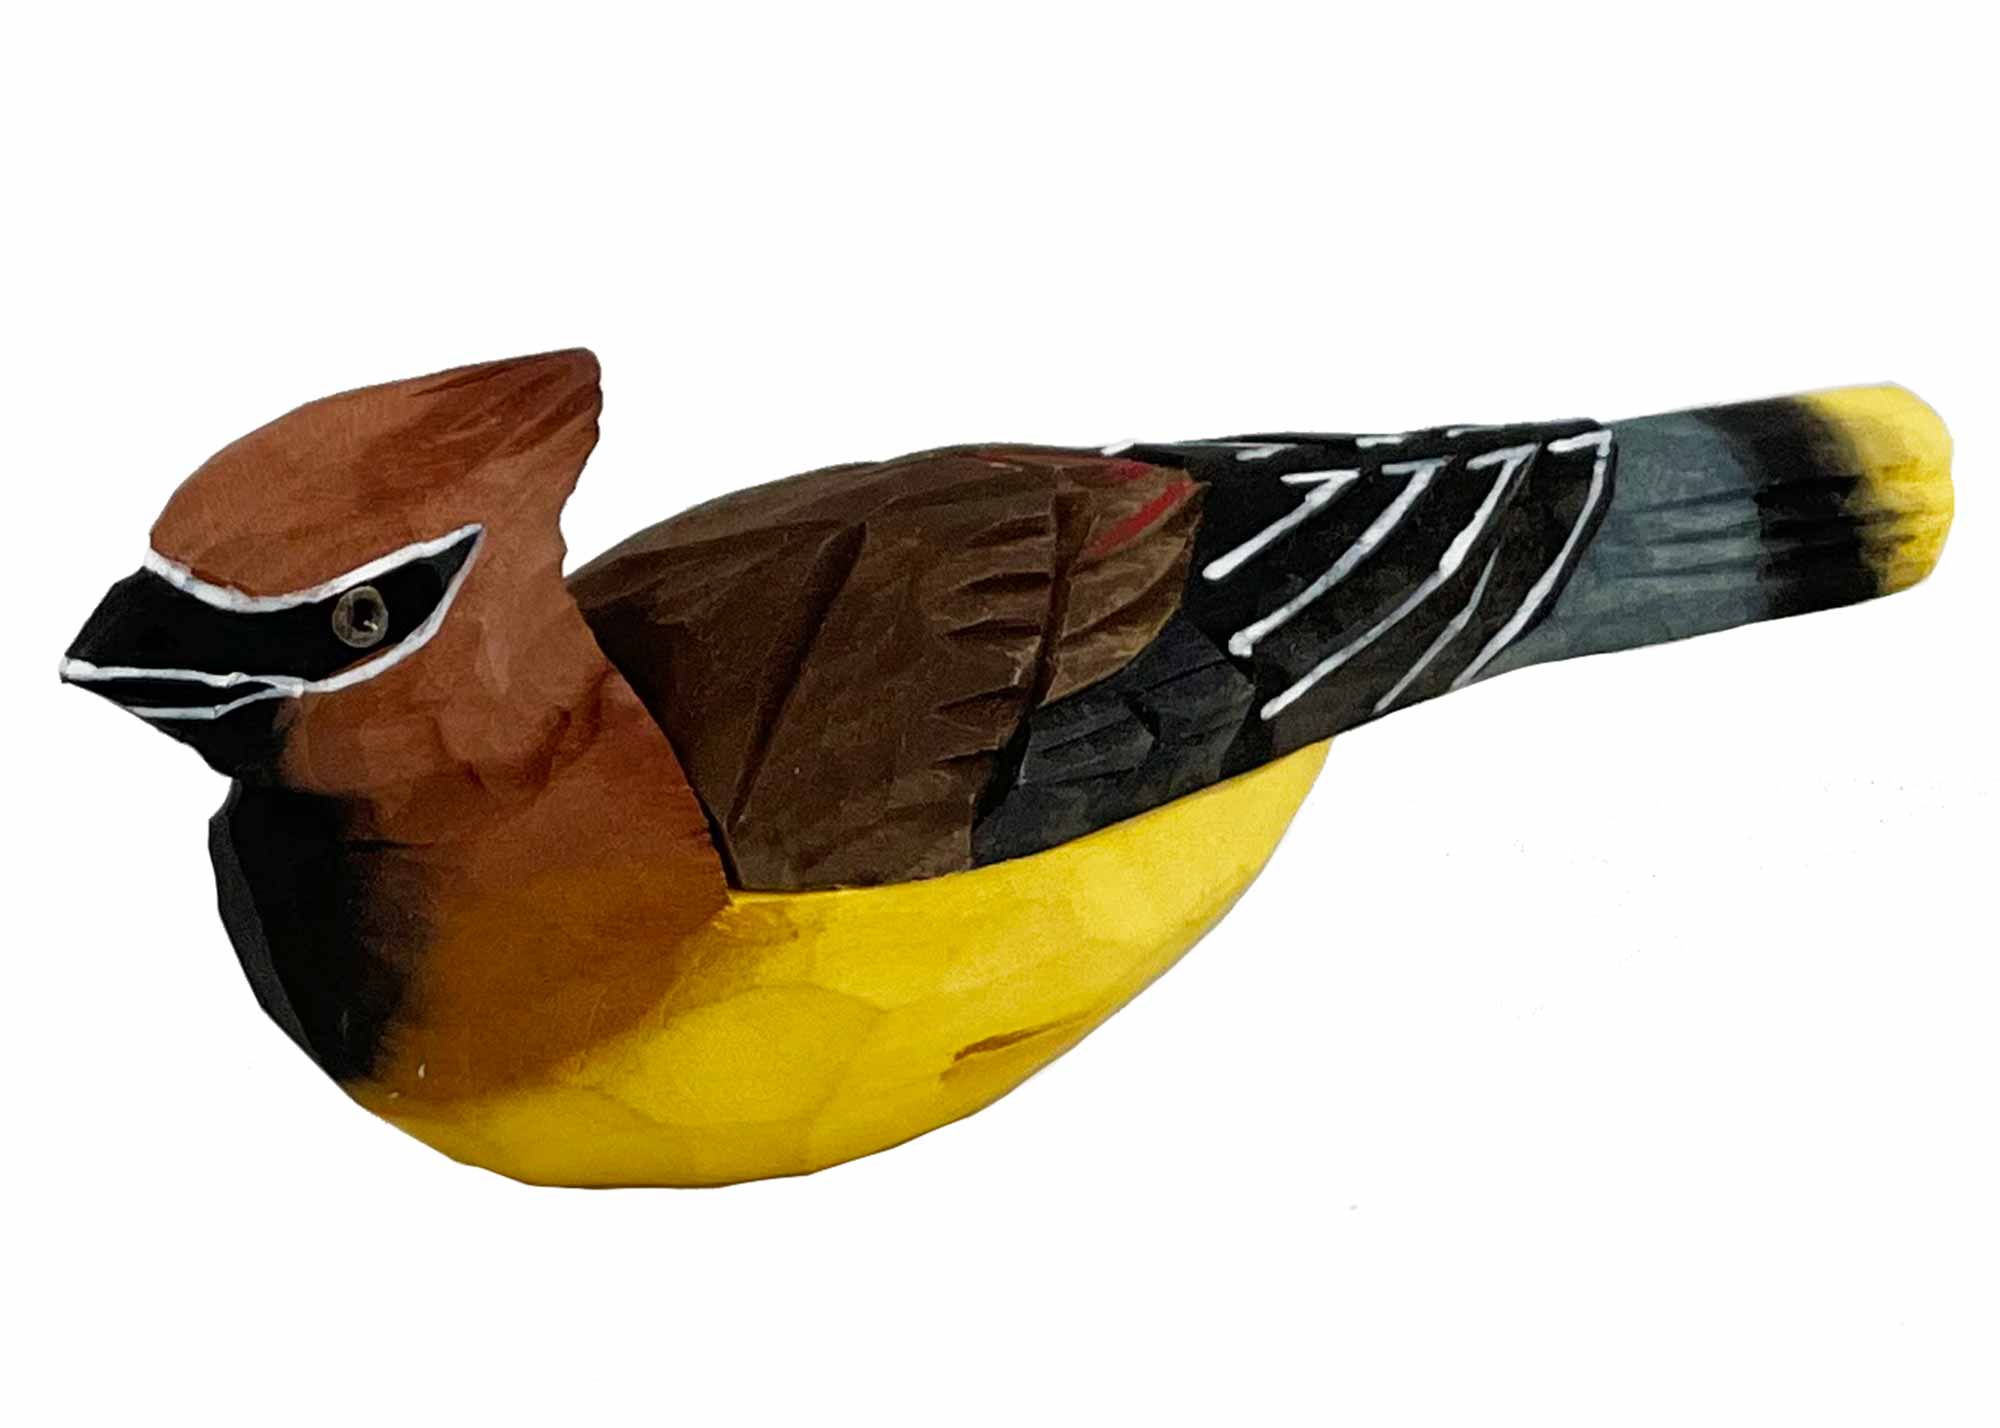 Buy Waxwing Bird Box at GoldenCockerel.com